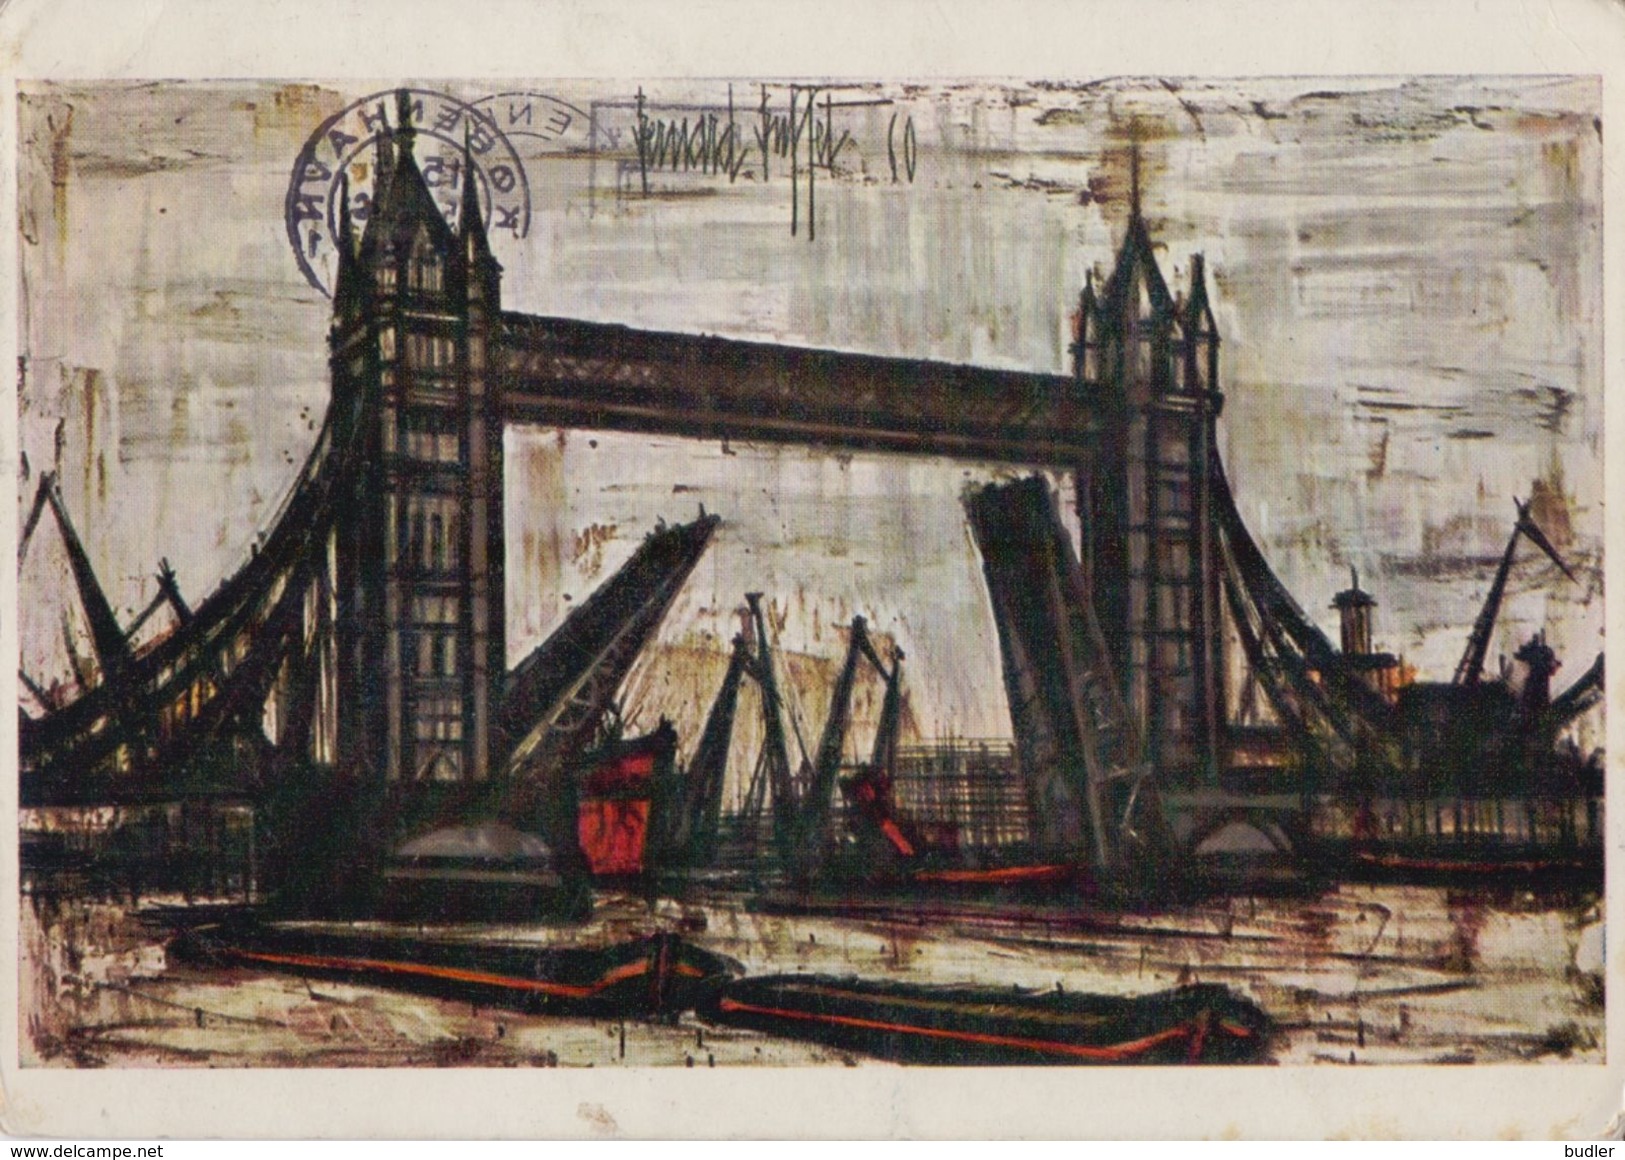 Paintings - Bernard BUFFET : ## Tower Bridge, London ## (1960